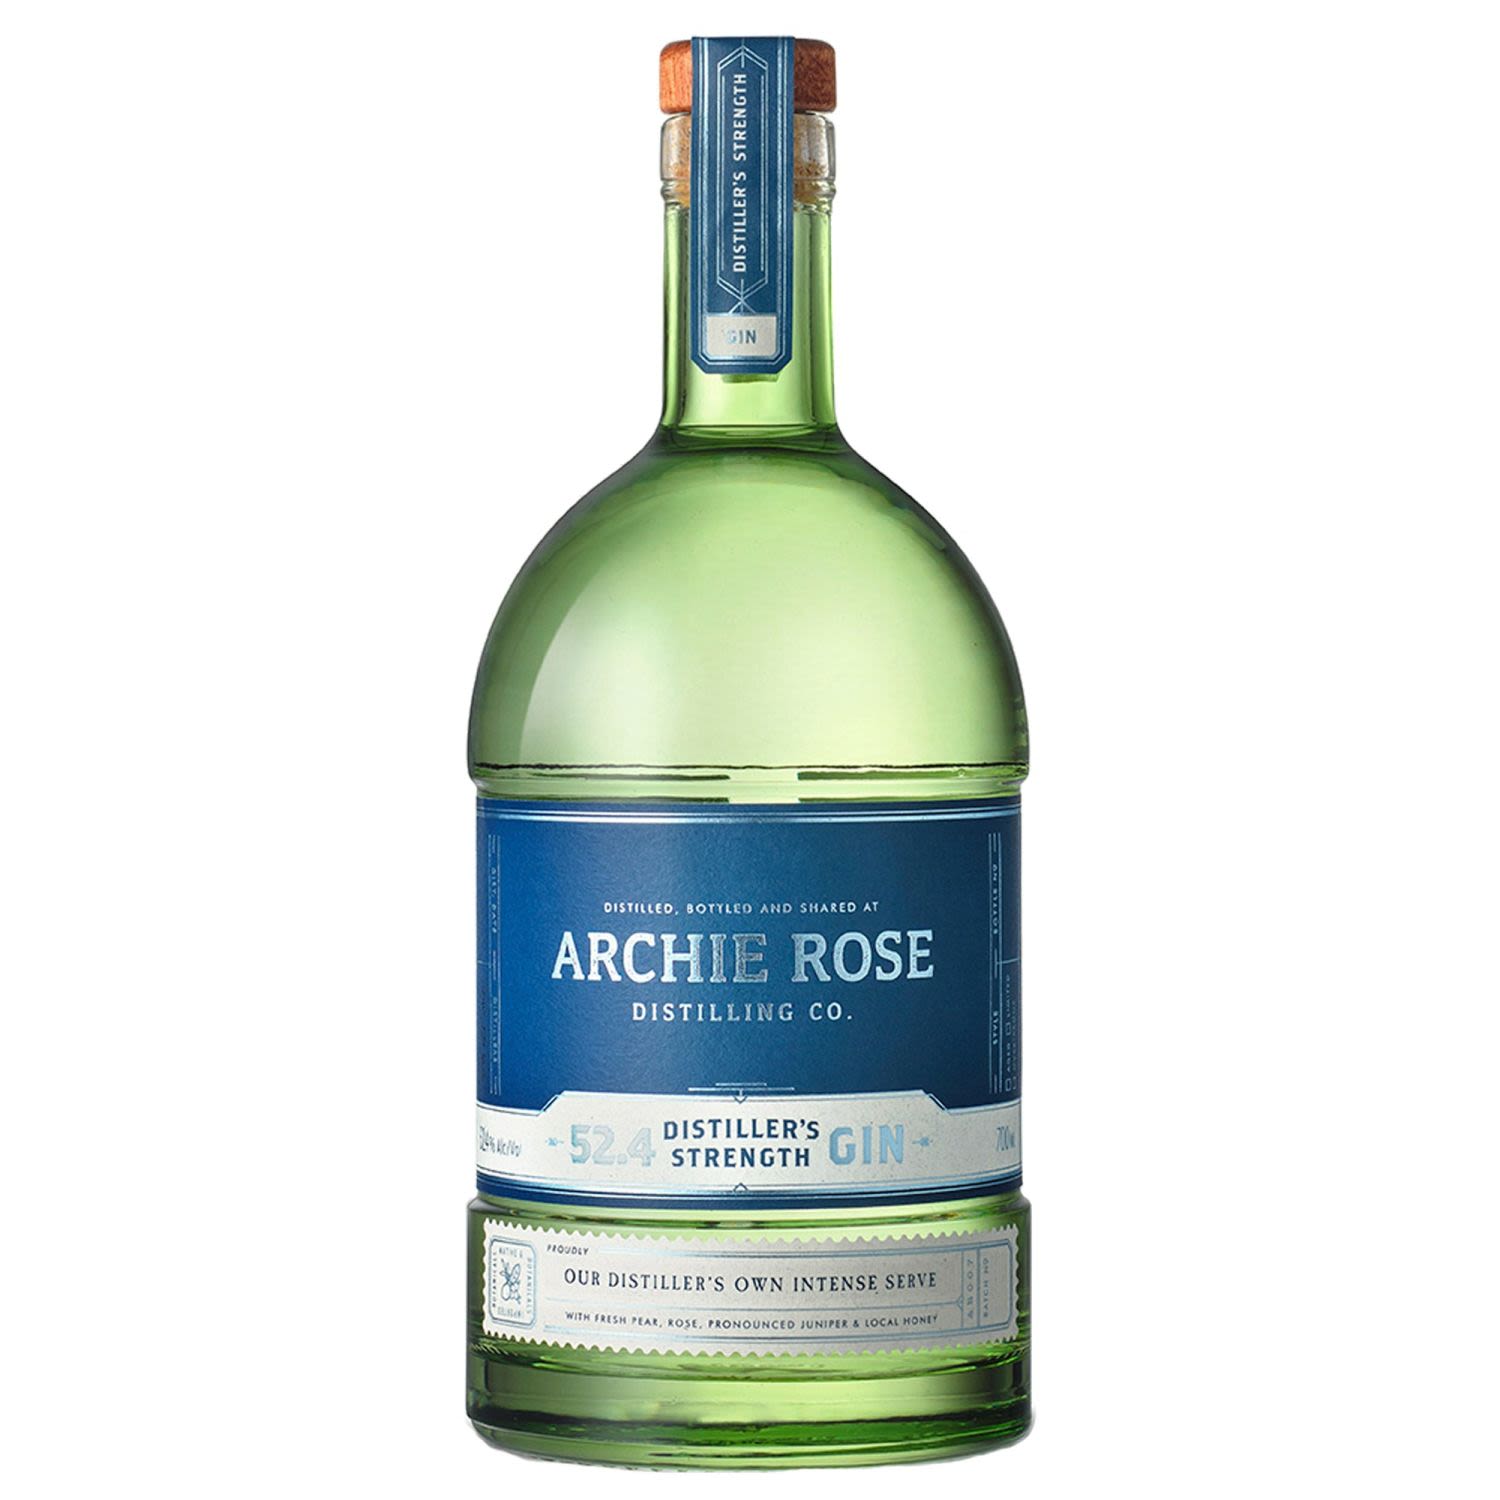 Archie Rose Distiller's Strength Gin 700mL Bottle